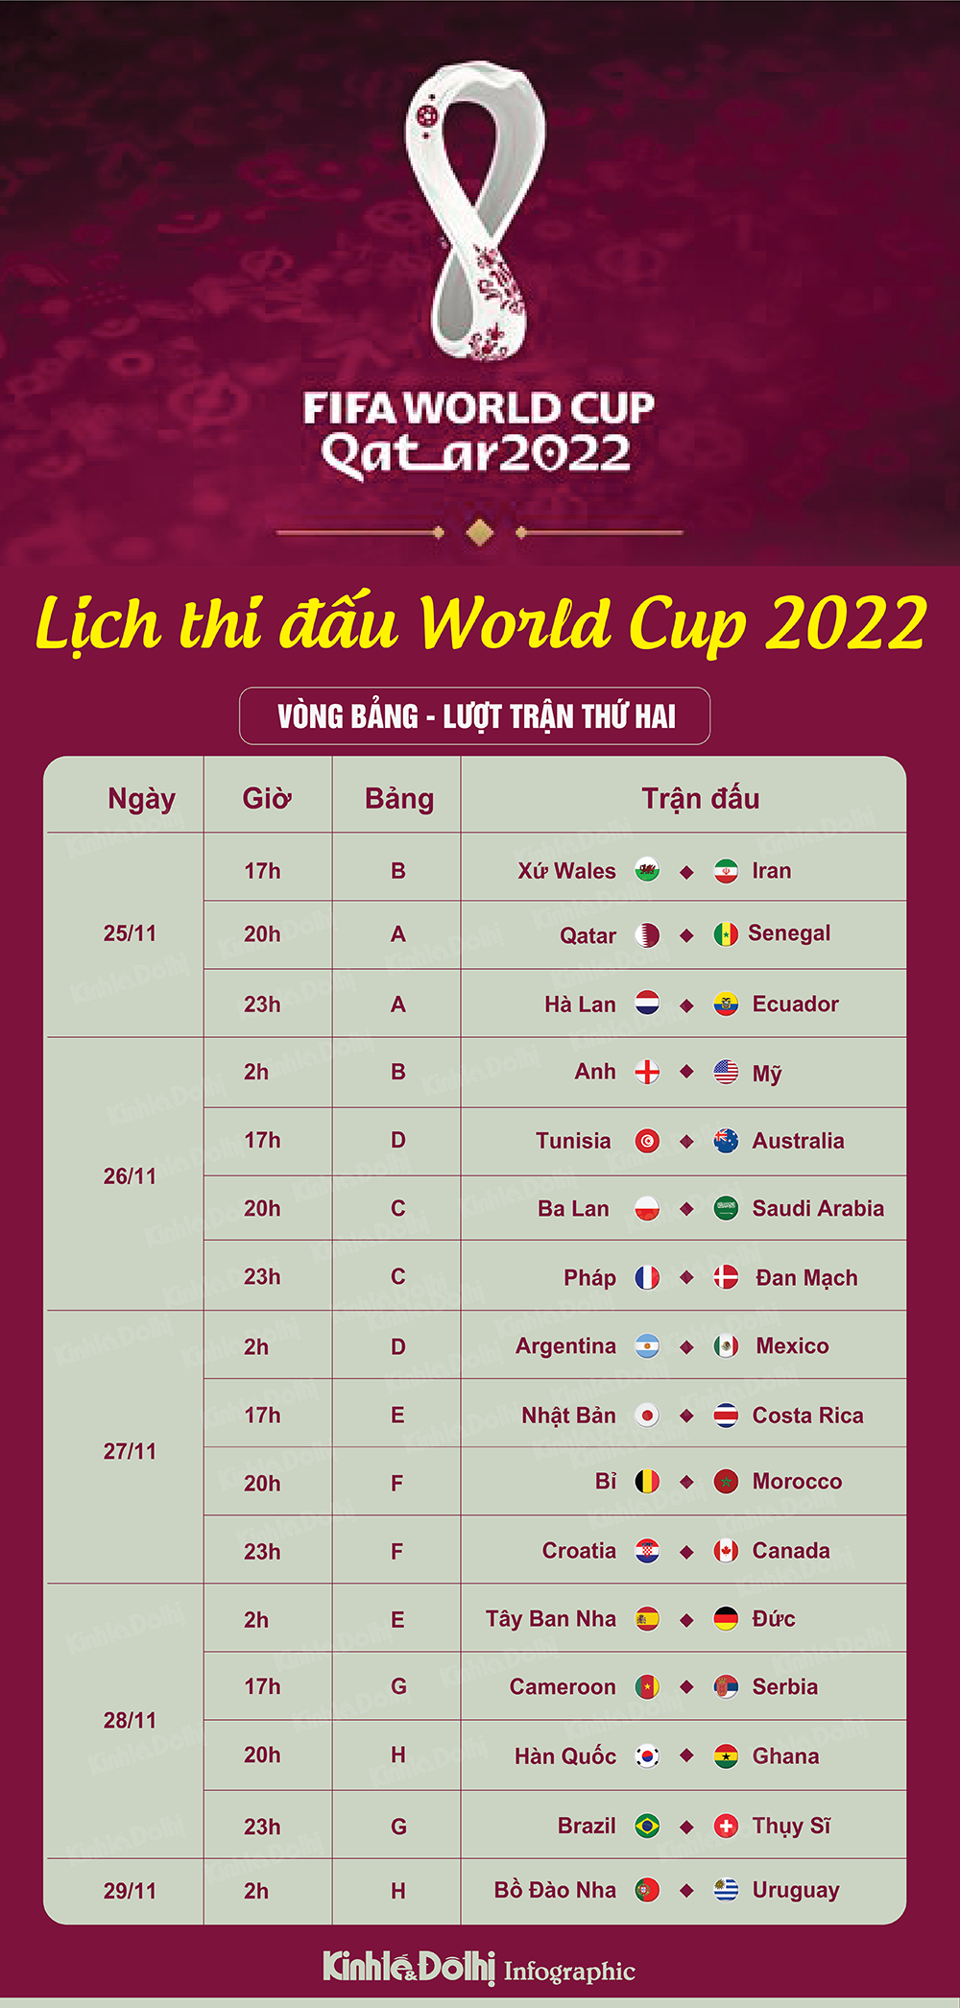 Lịch thi đấu World Cup 2022 ngày 28/11: Chờ tiền đạo Son Heung-min ghi bàn - Ảnh 1